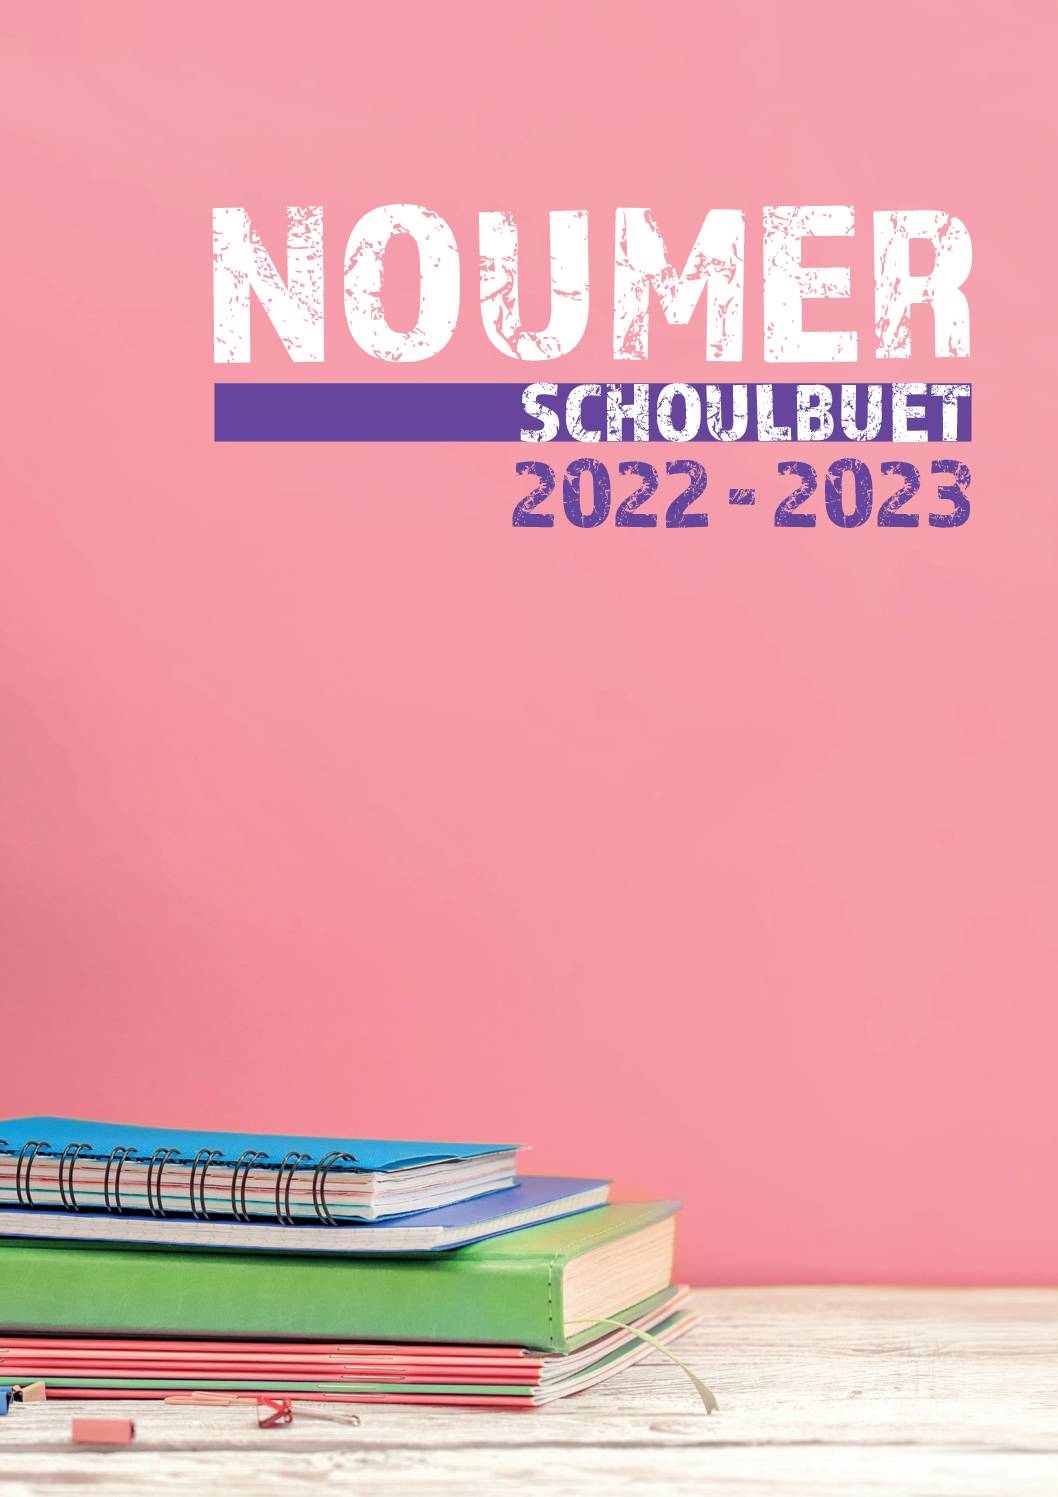 Schoulbuet 2022-2023 - premiere page